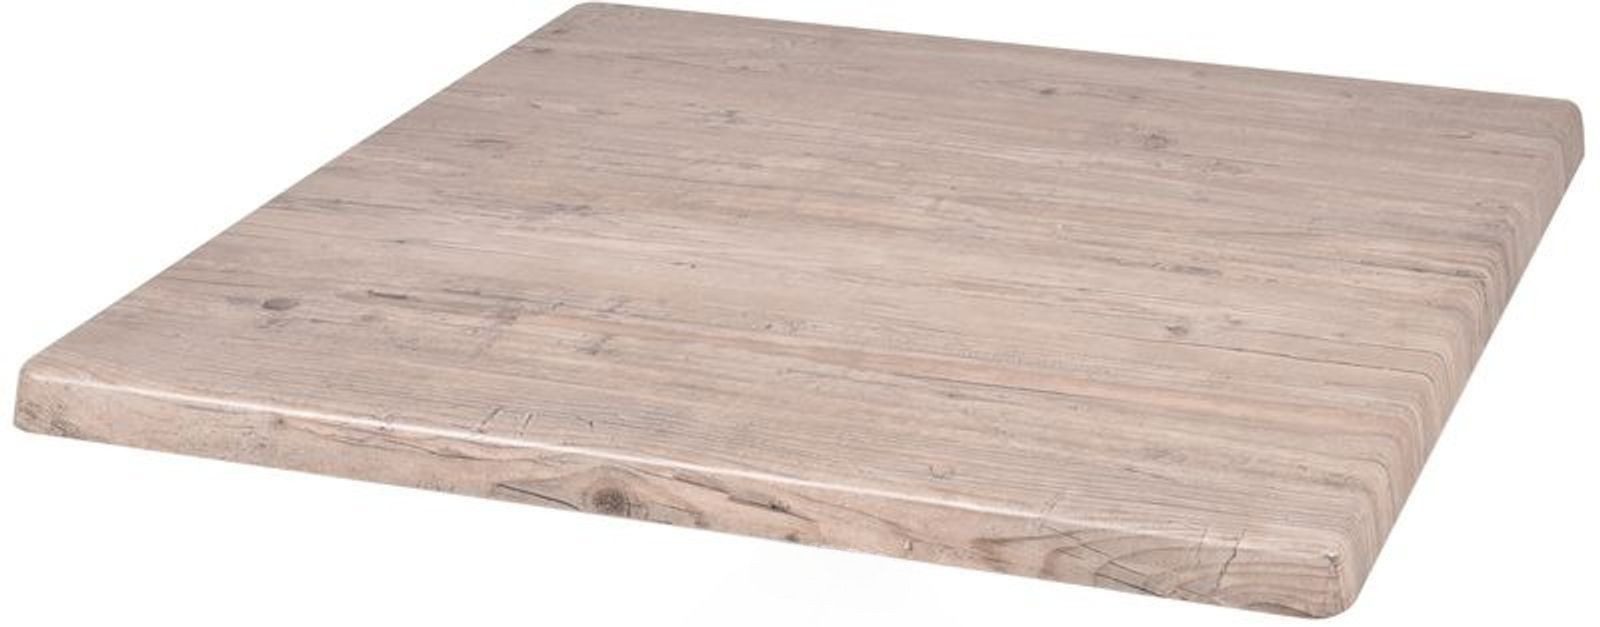 Gravidus Bistrotisch Tischplatte Washington Pine 70x70 cm